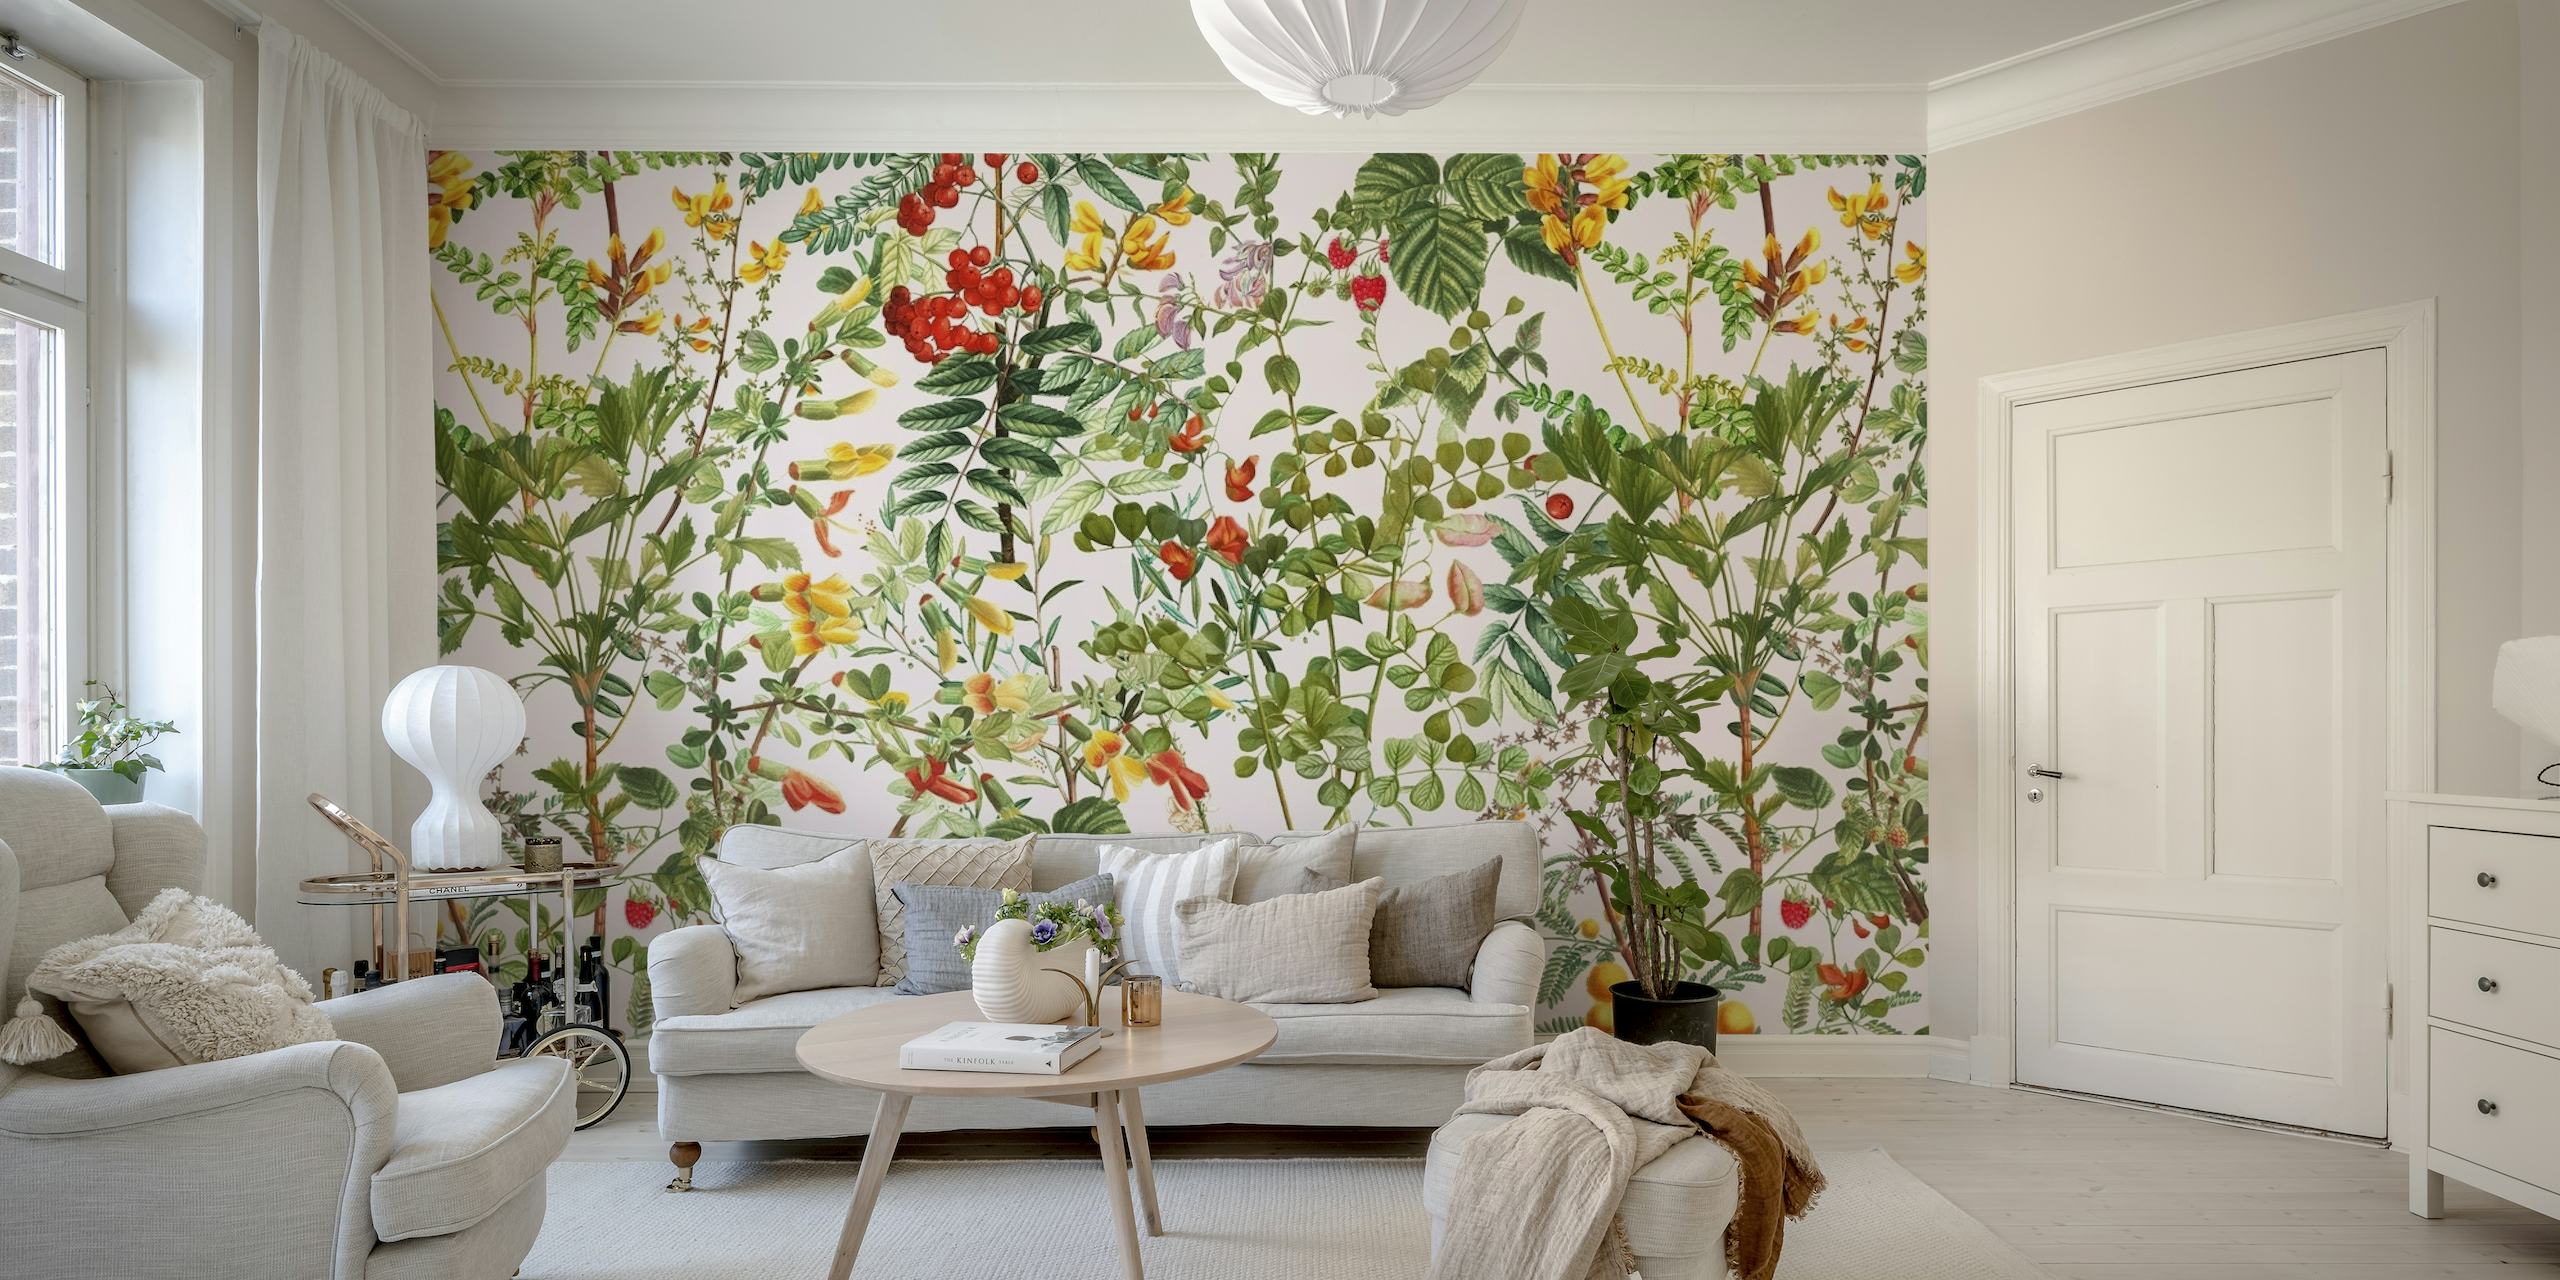 Zidna slika inspirirana bujnom ljetnom livadom s raznim cvijećem i zelenilom